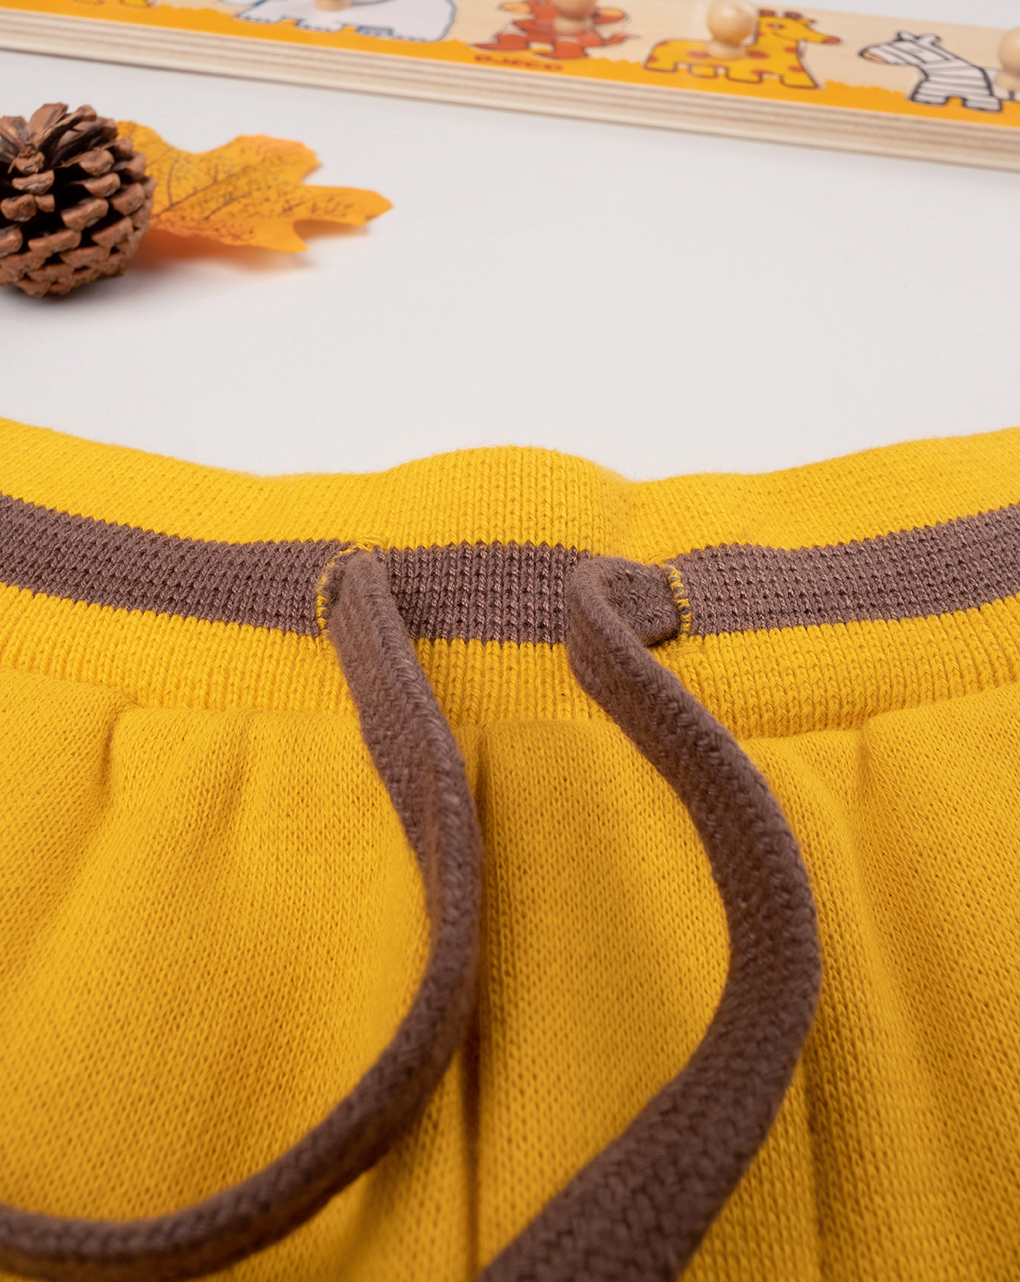 βρεφικό παντελόνι φούτερ κίτρινο με ζώα δάσους για αγόρι - Prénatal